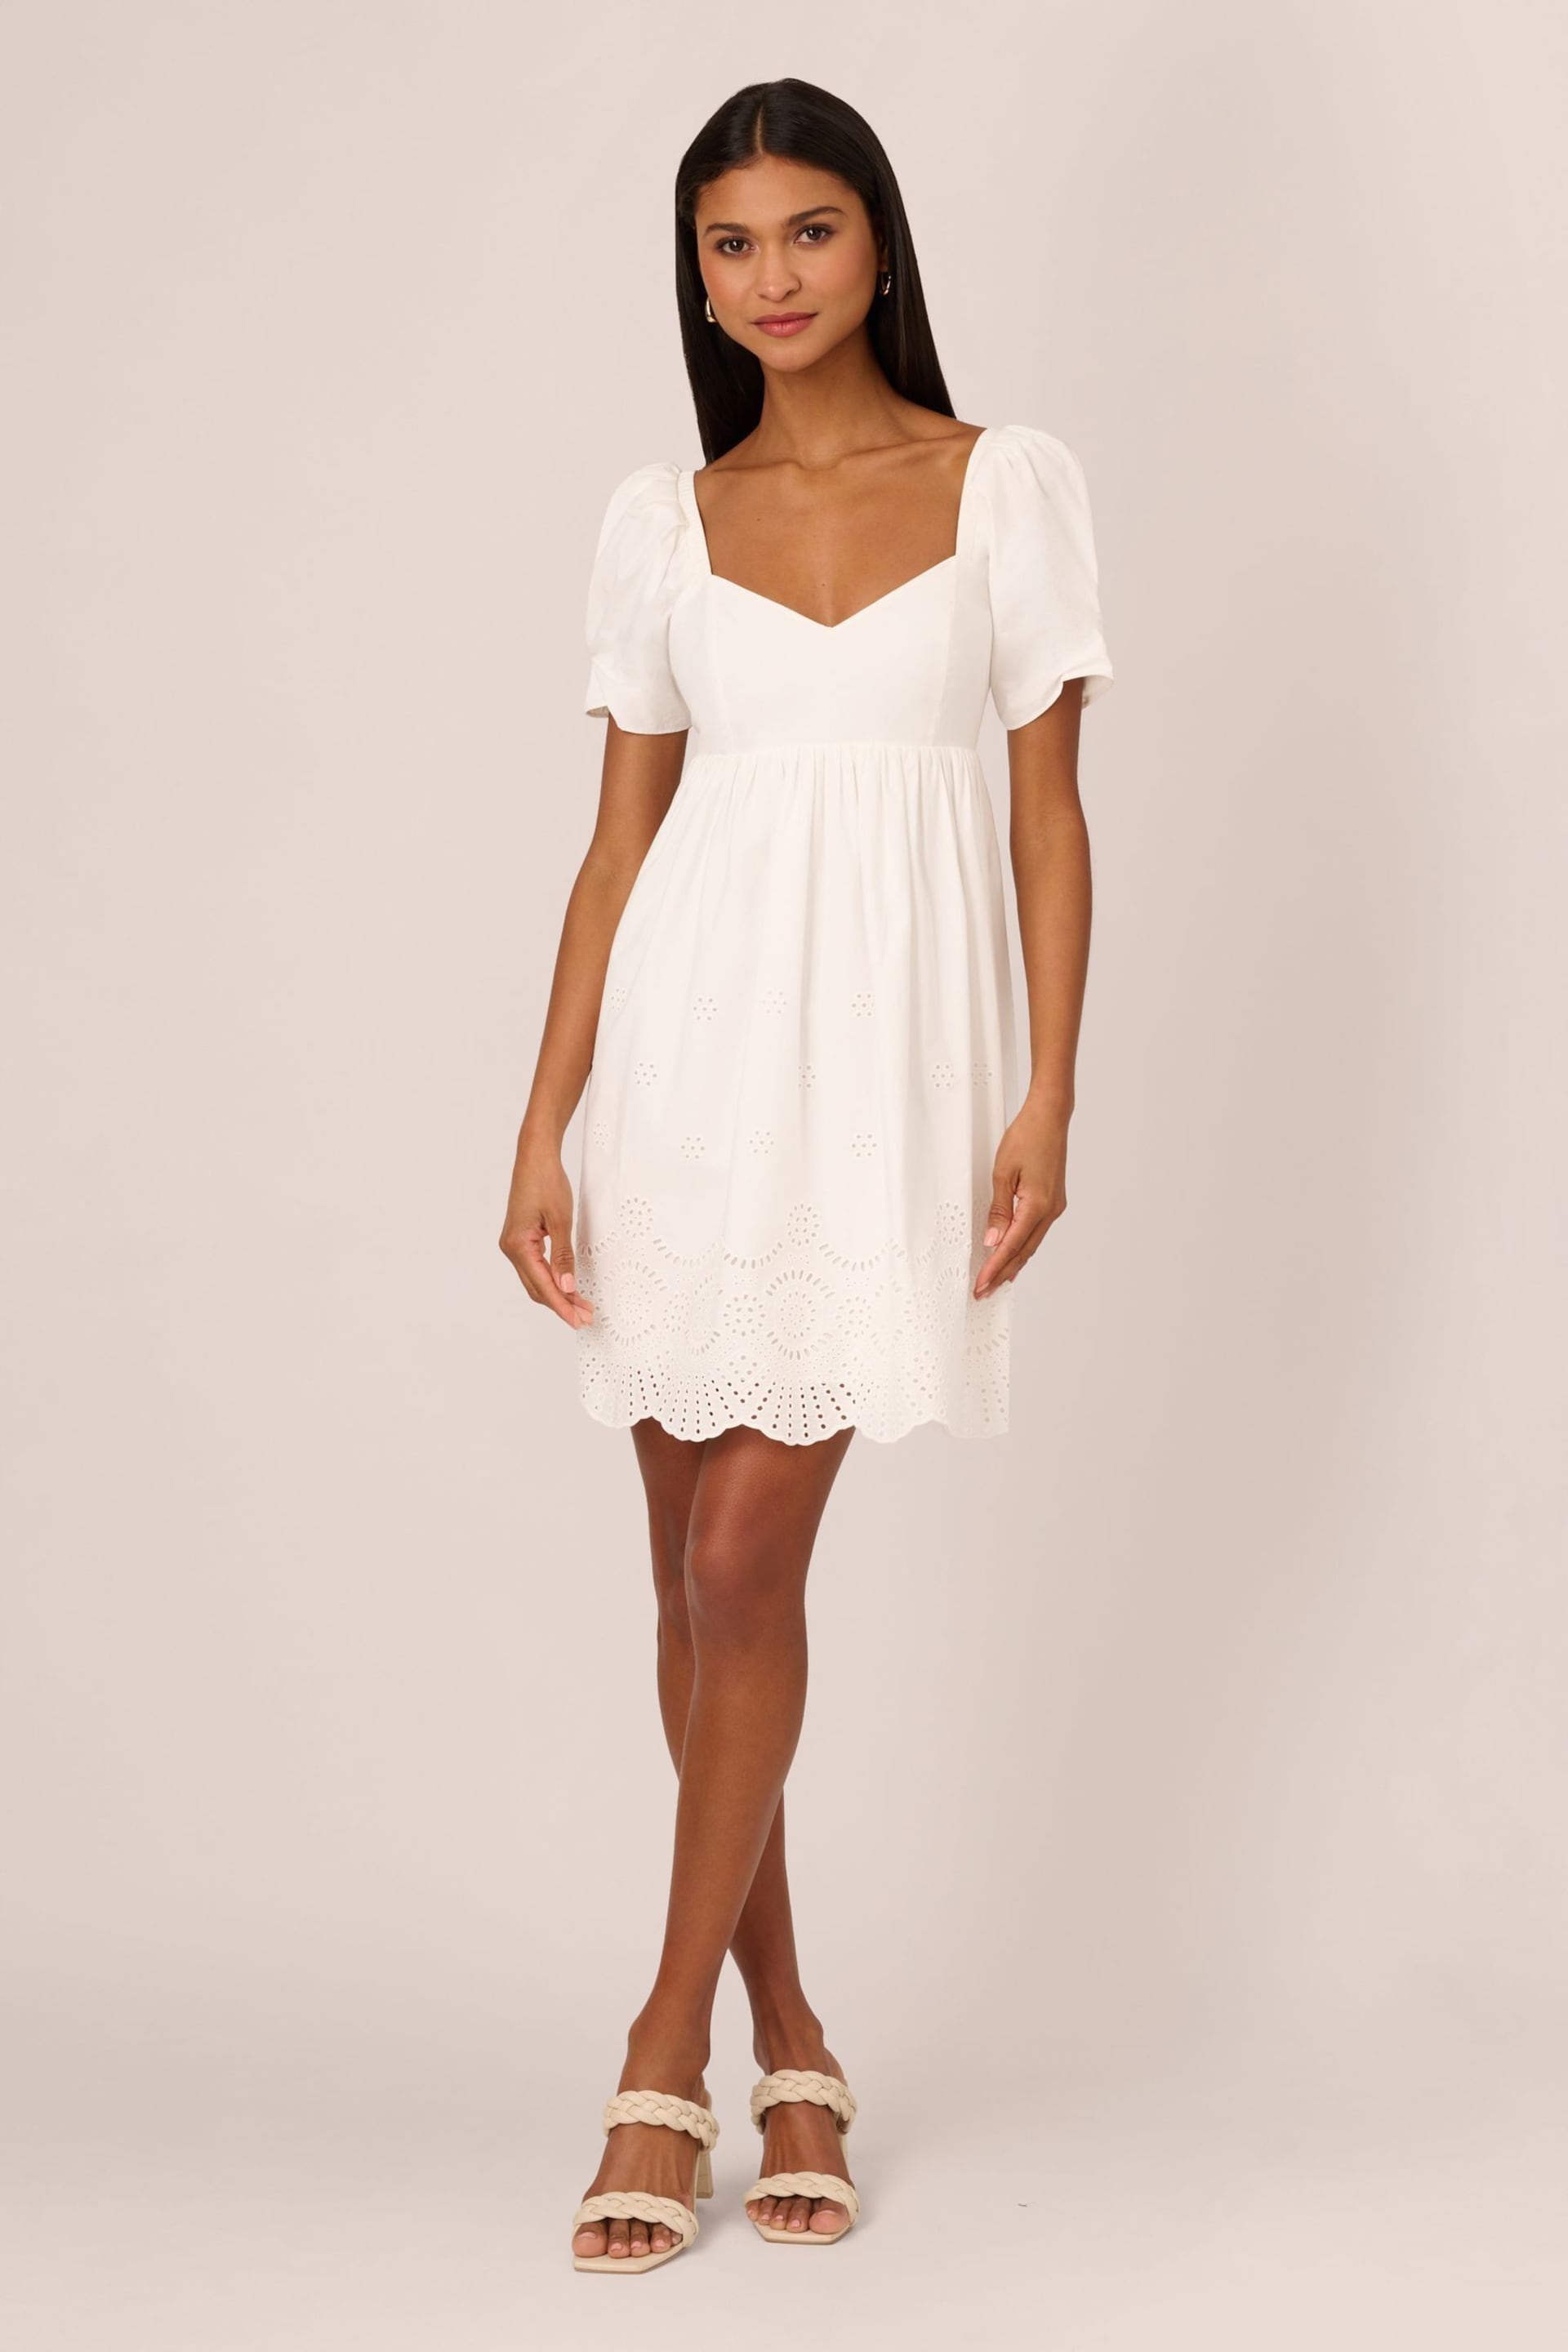 Adrianna Papell Eyelet Short White Dress - Image 6 of 8